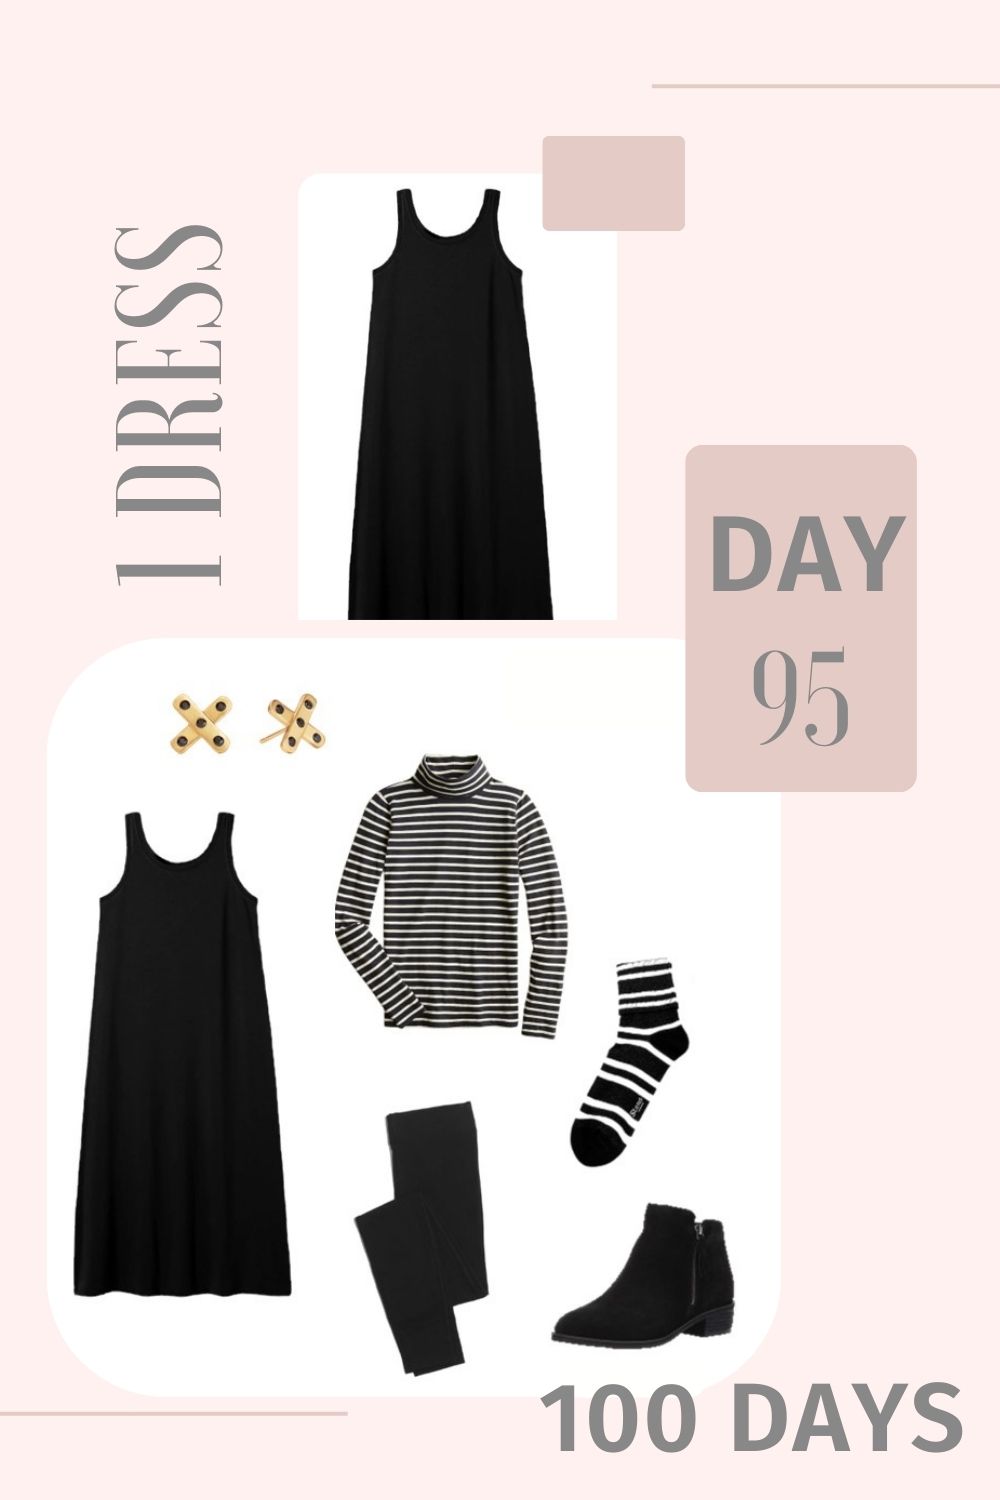 1 Dress 100 Days - Day 95